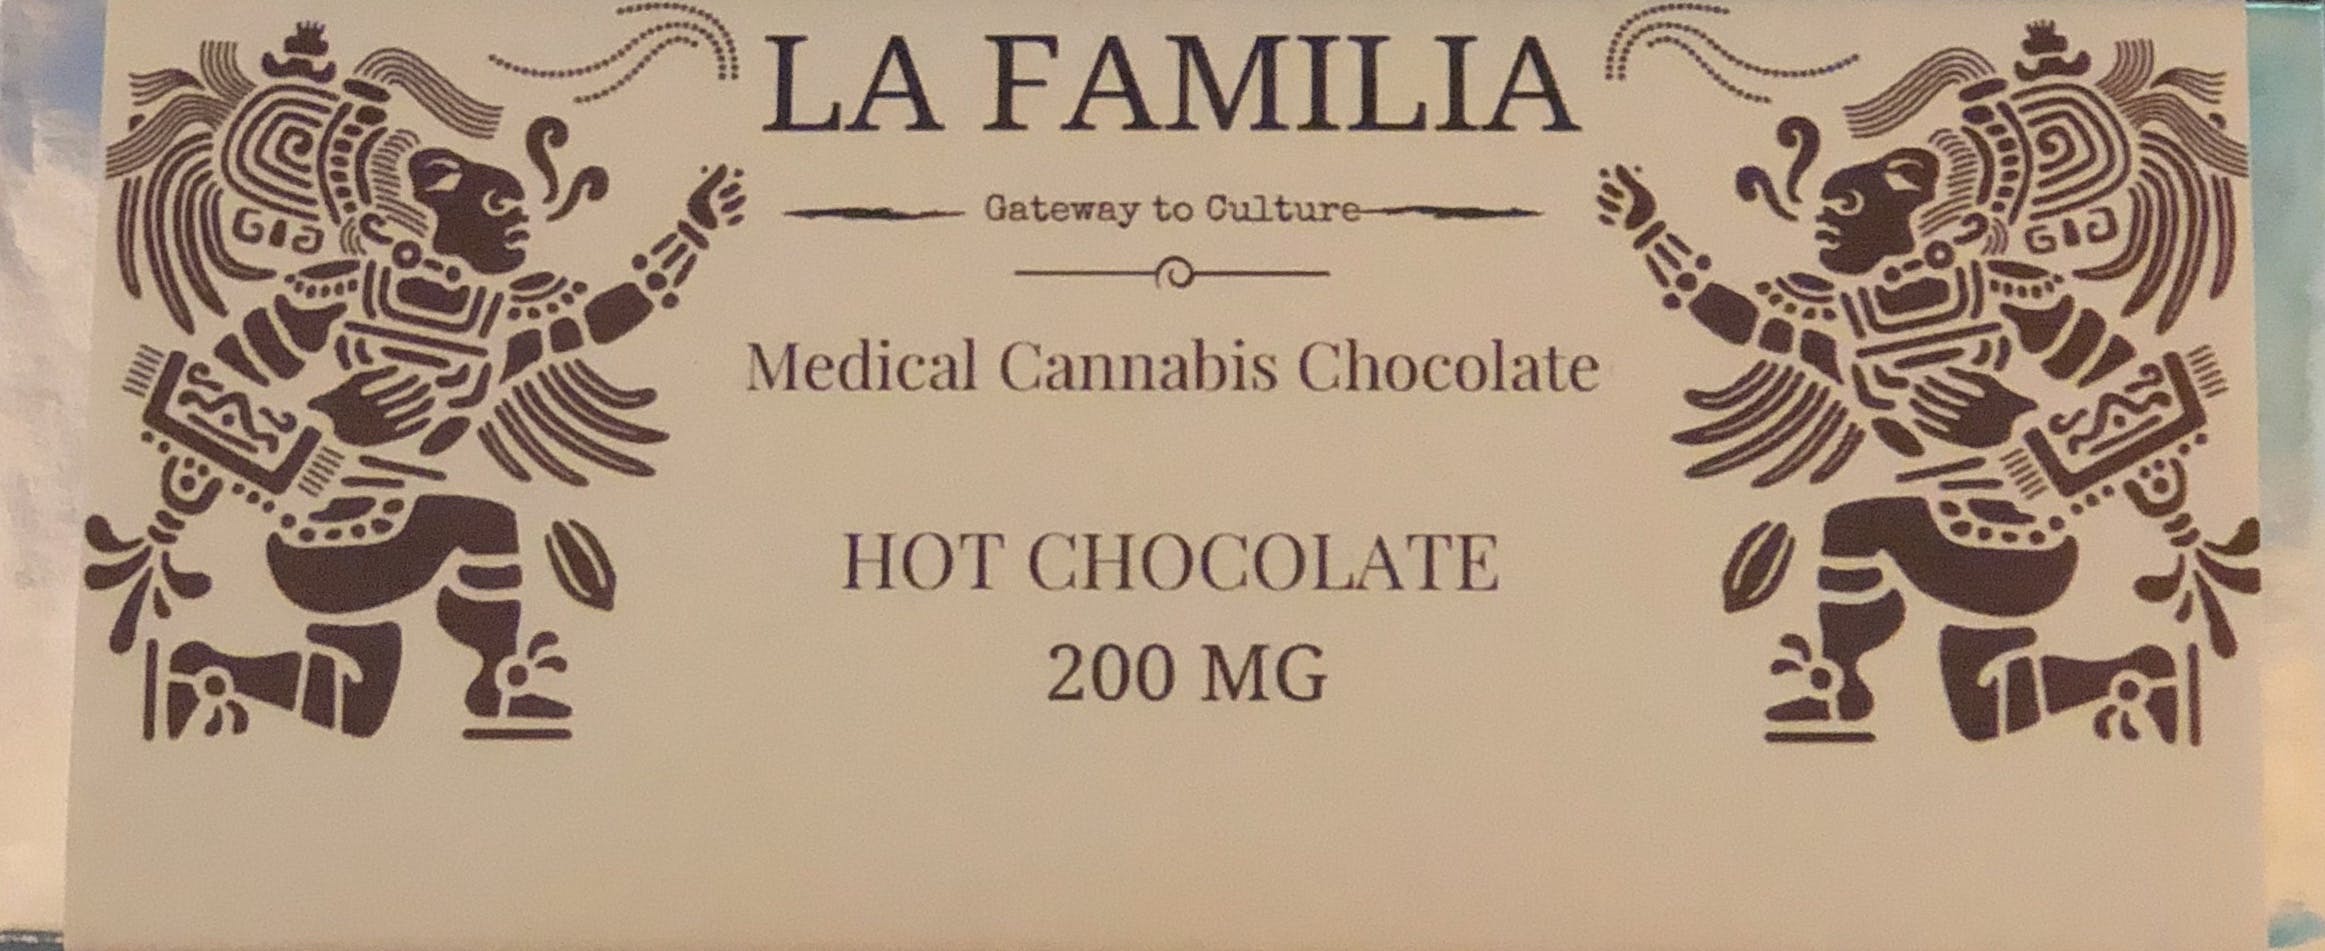 La Familia 200Mg Hot Chocolate